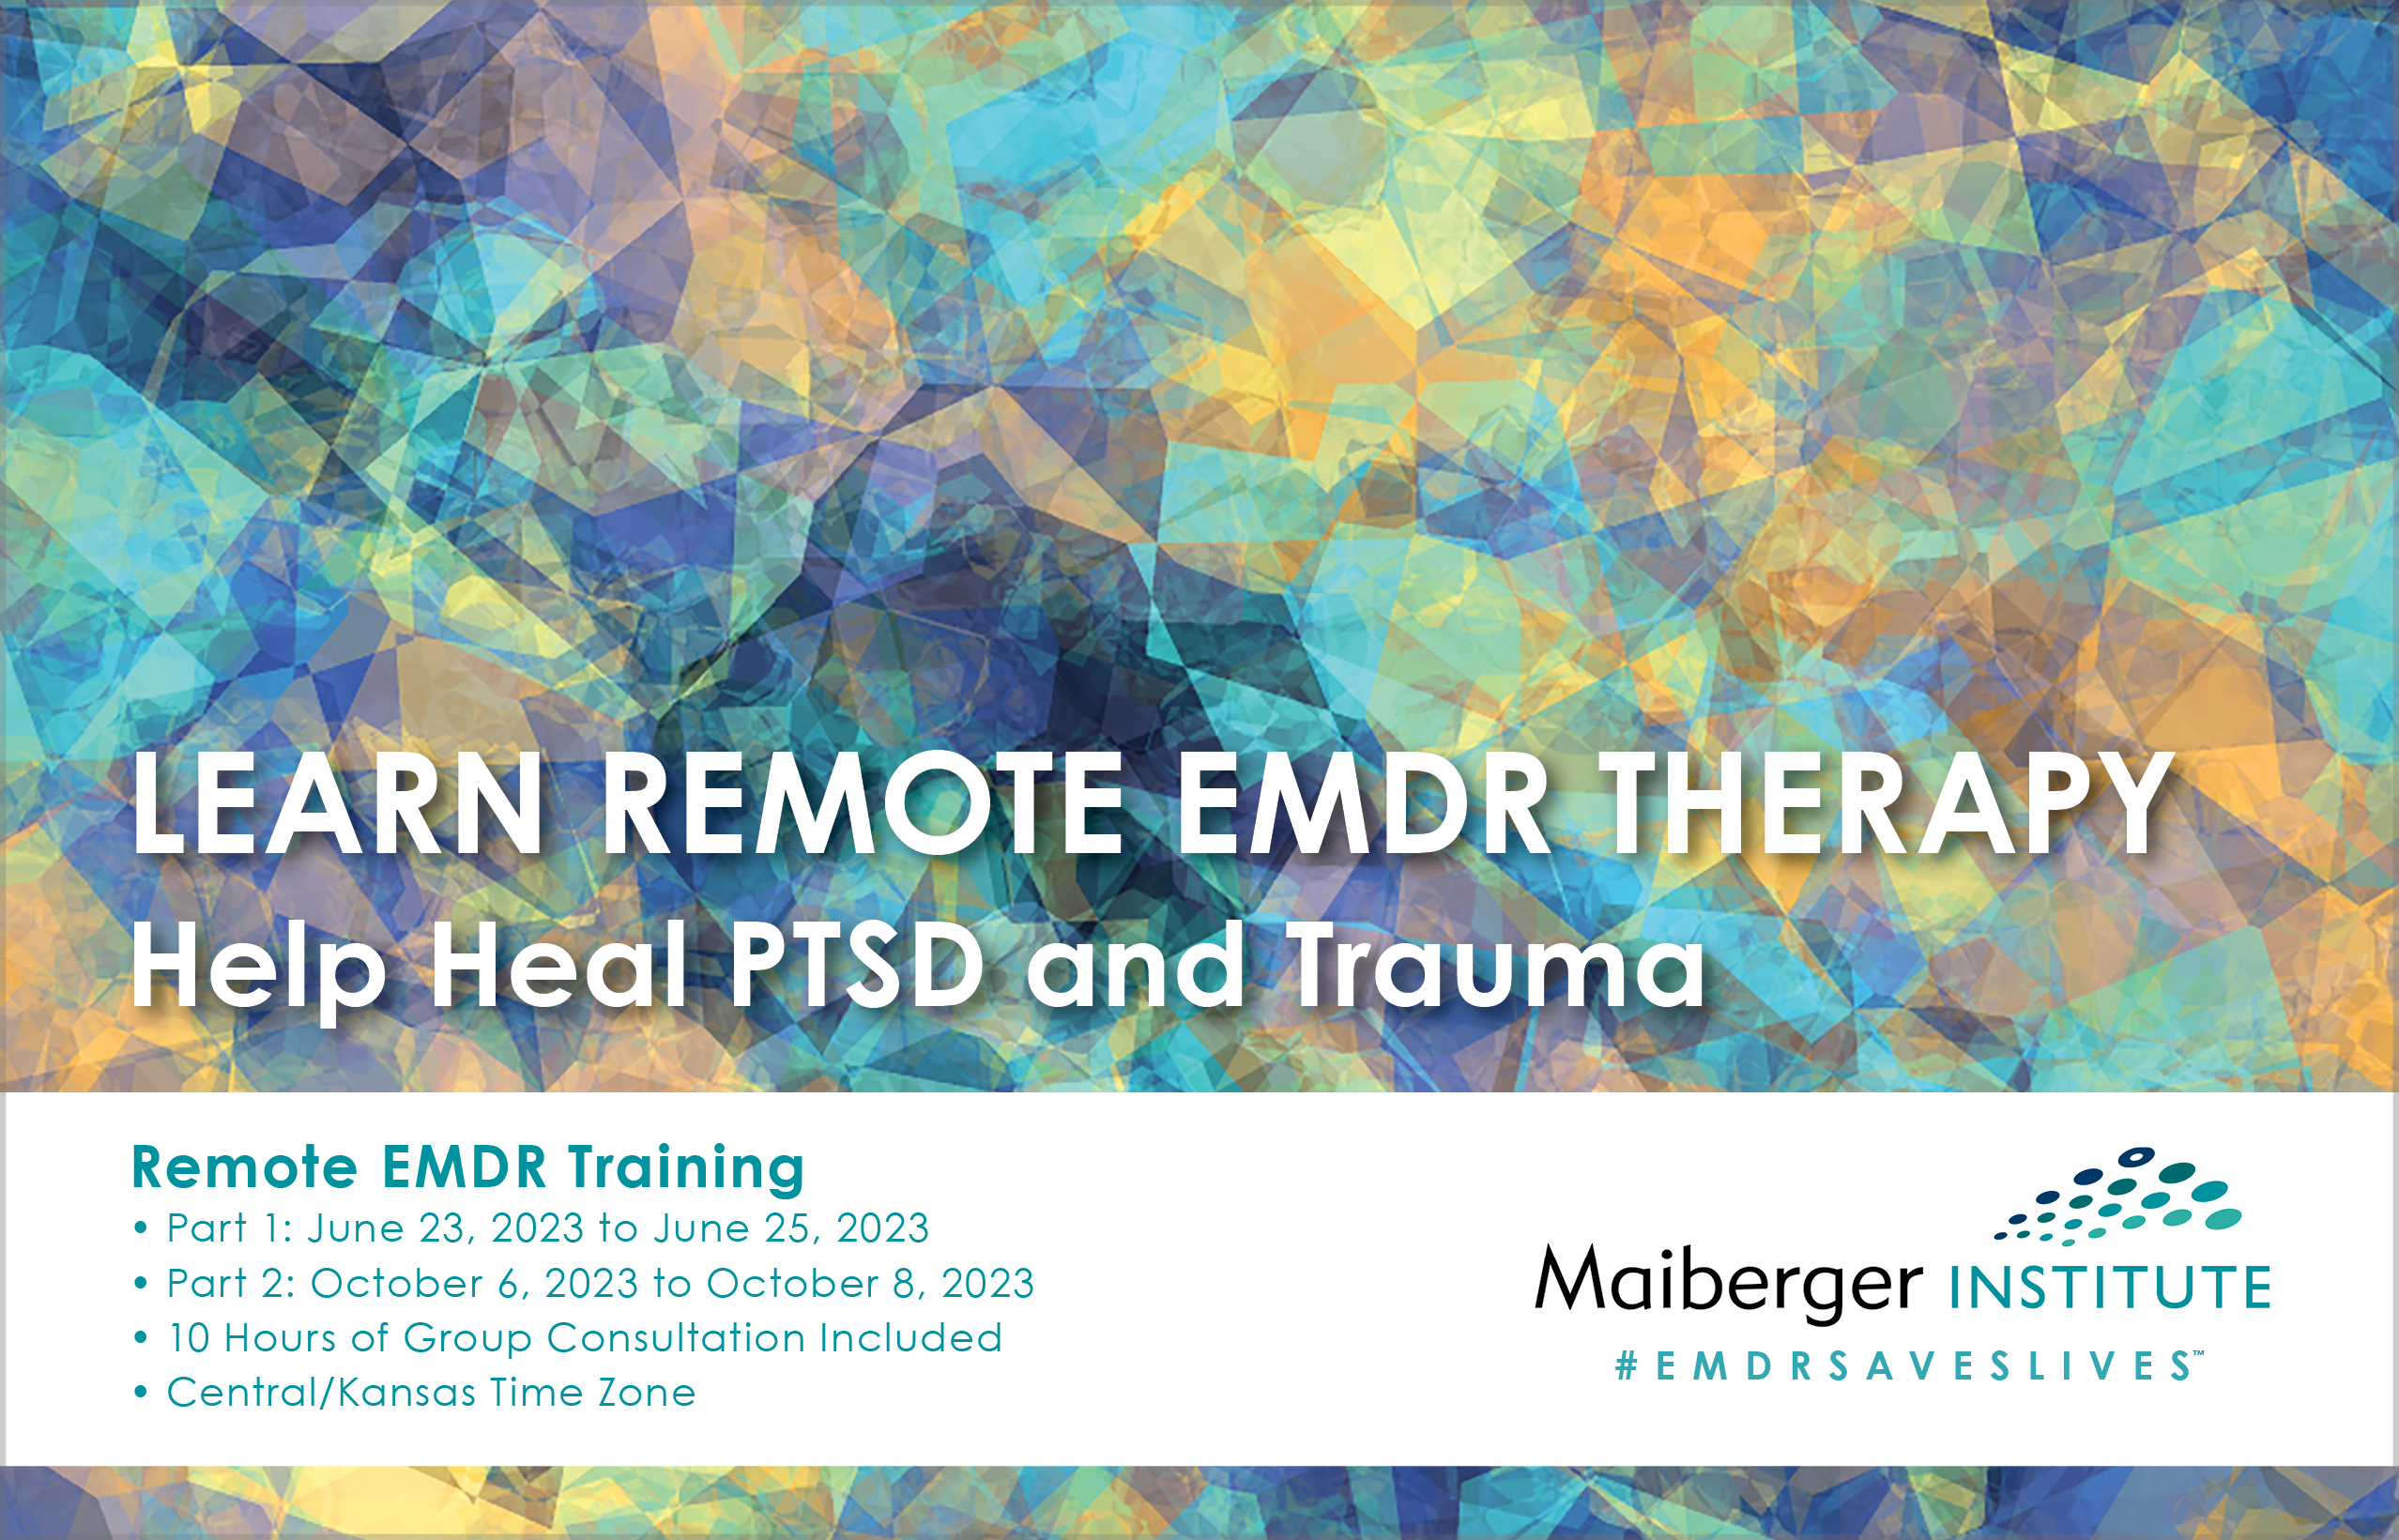 Remote EMDR Training - June 2023 and October 2023 - Maiberger Institute - #EMDRSAVESLIVES - EMDR TRAINING SCHEDULE